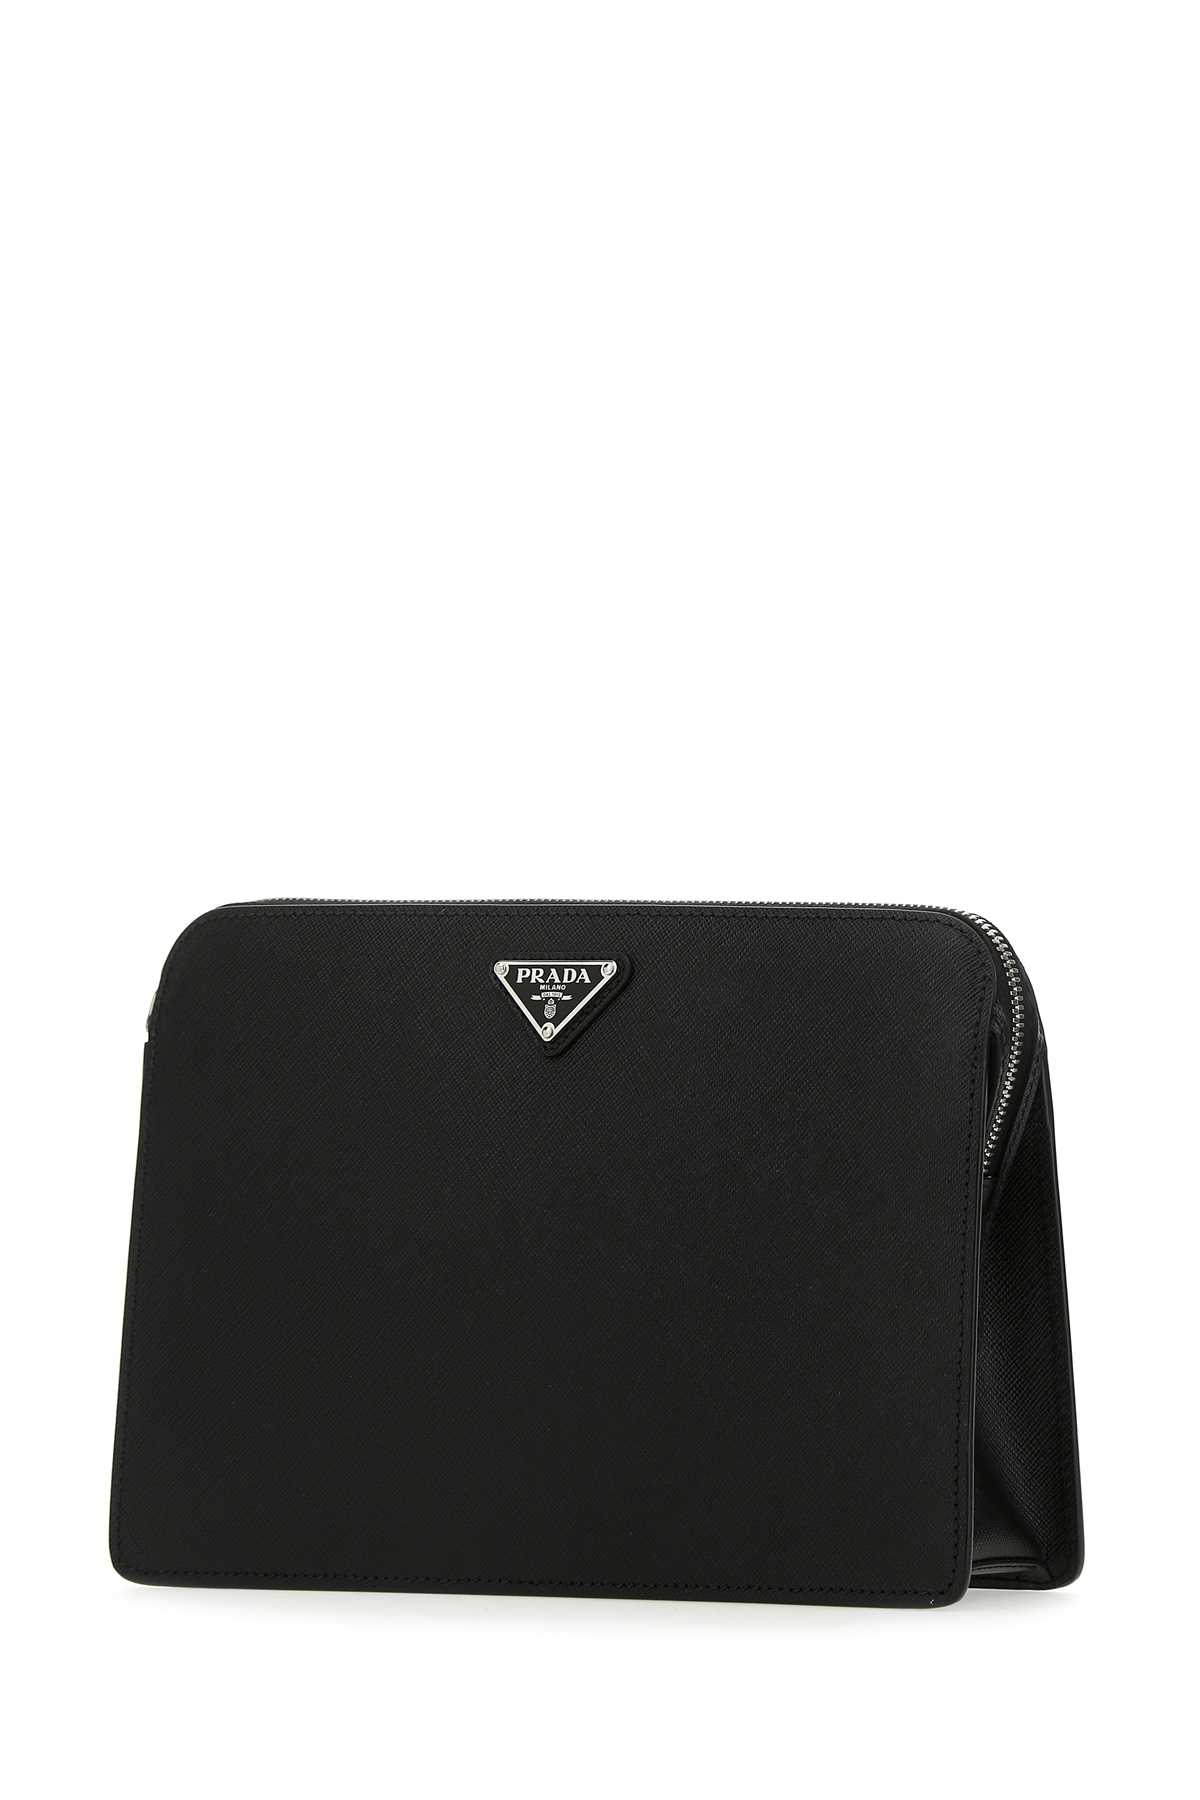 Shop Prada Black Leather Clutch In F0002